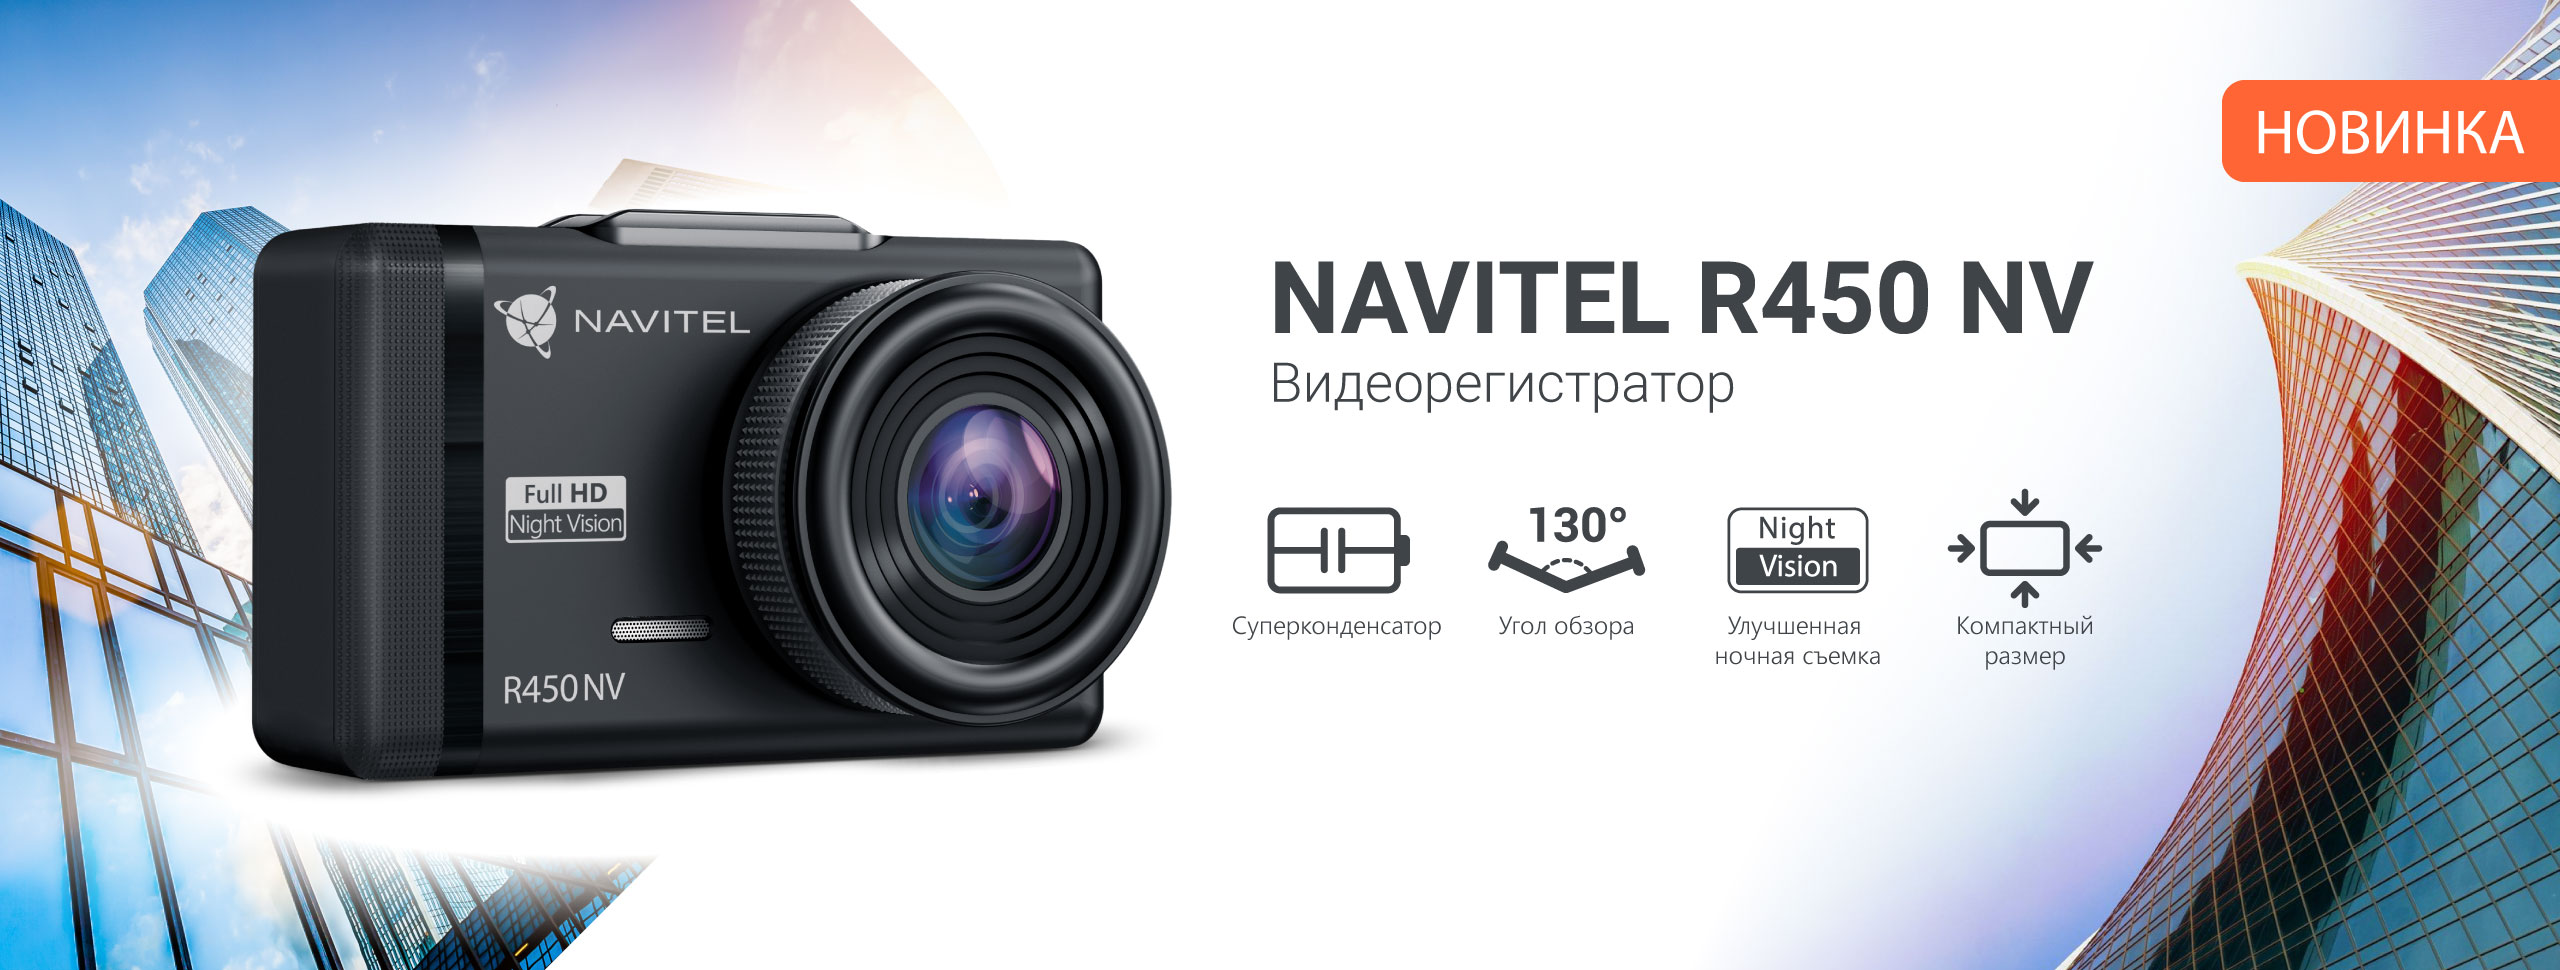 Новый видеорегистратор NAVITEL R450 NV с суперконденсатором